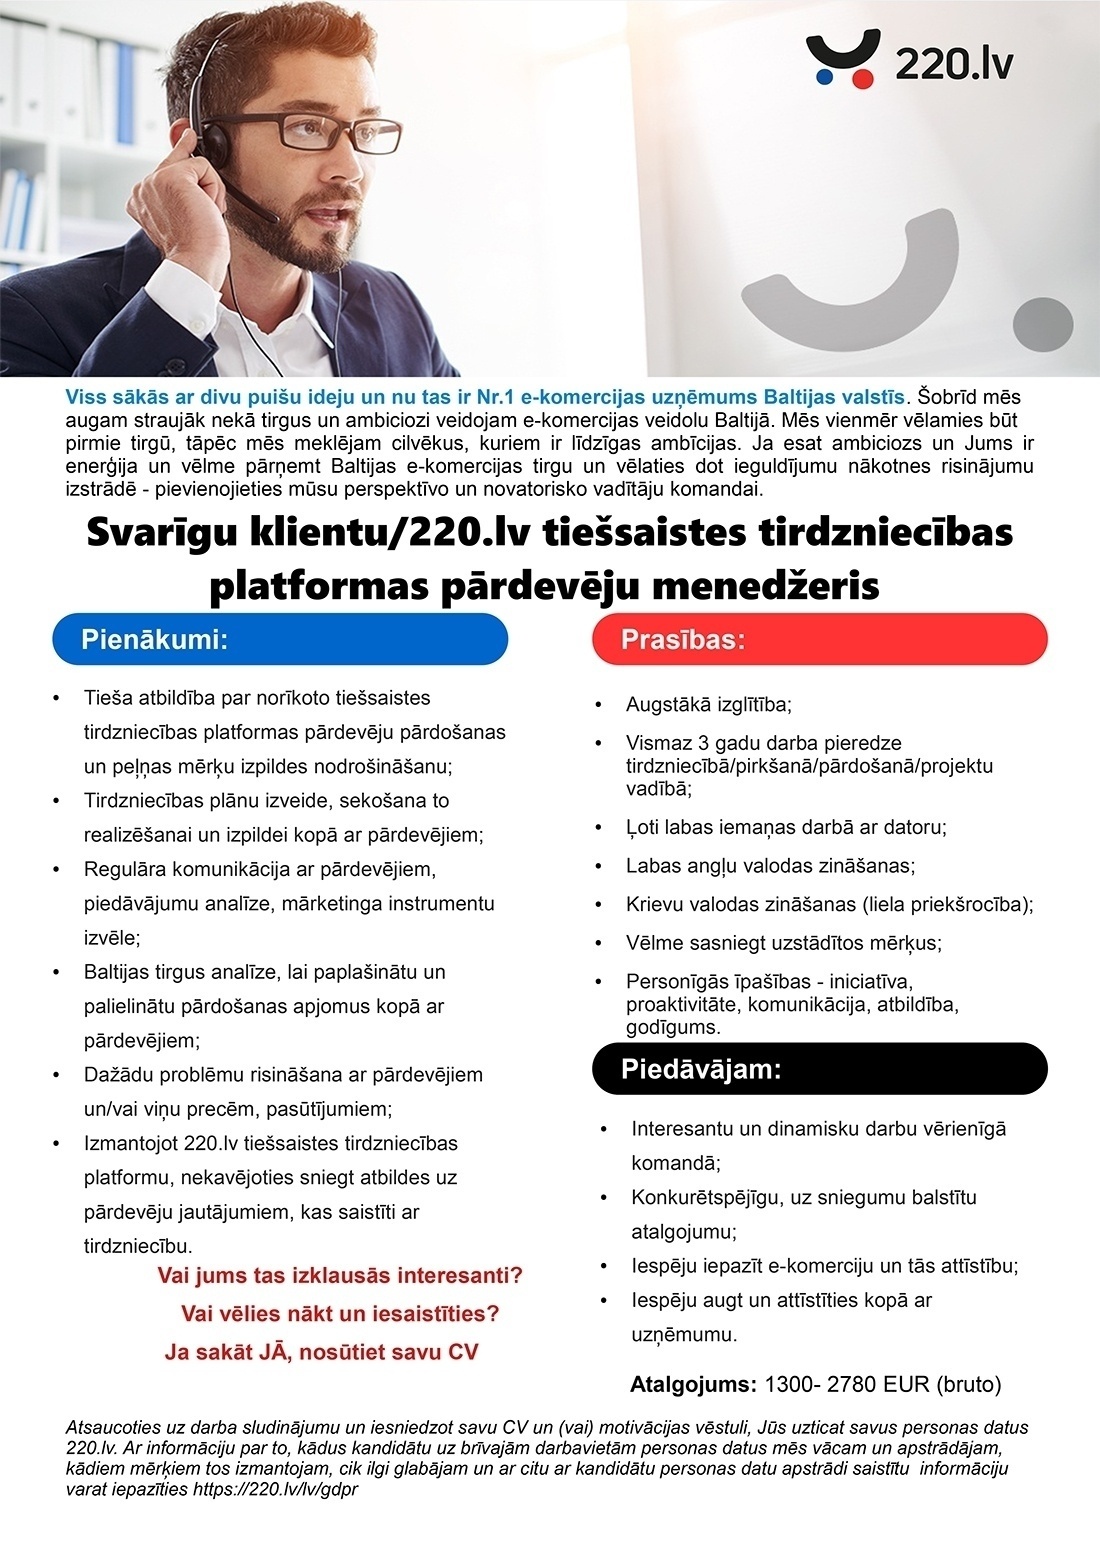 Pigu Latvia, SIA(220.lv) Svarīgu klientu / 220.lv tiešsaistes tirdzniecības platformas pārdevēju menedžeris/-e